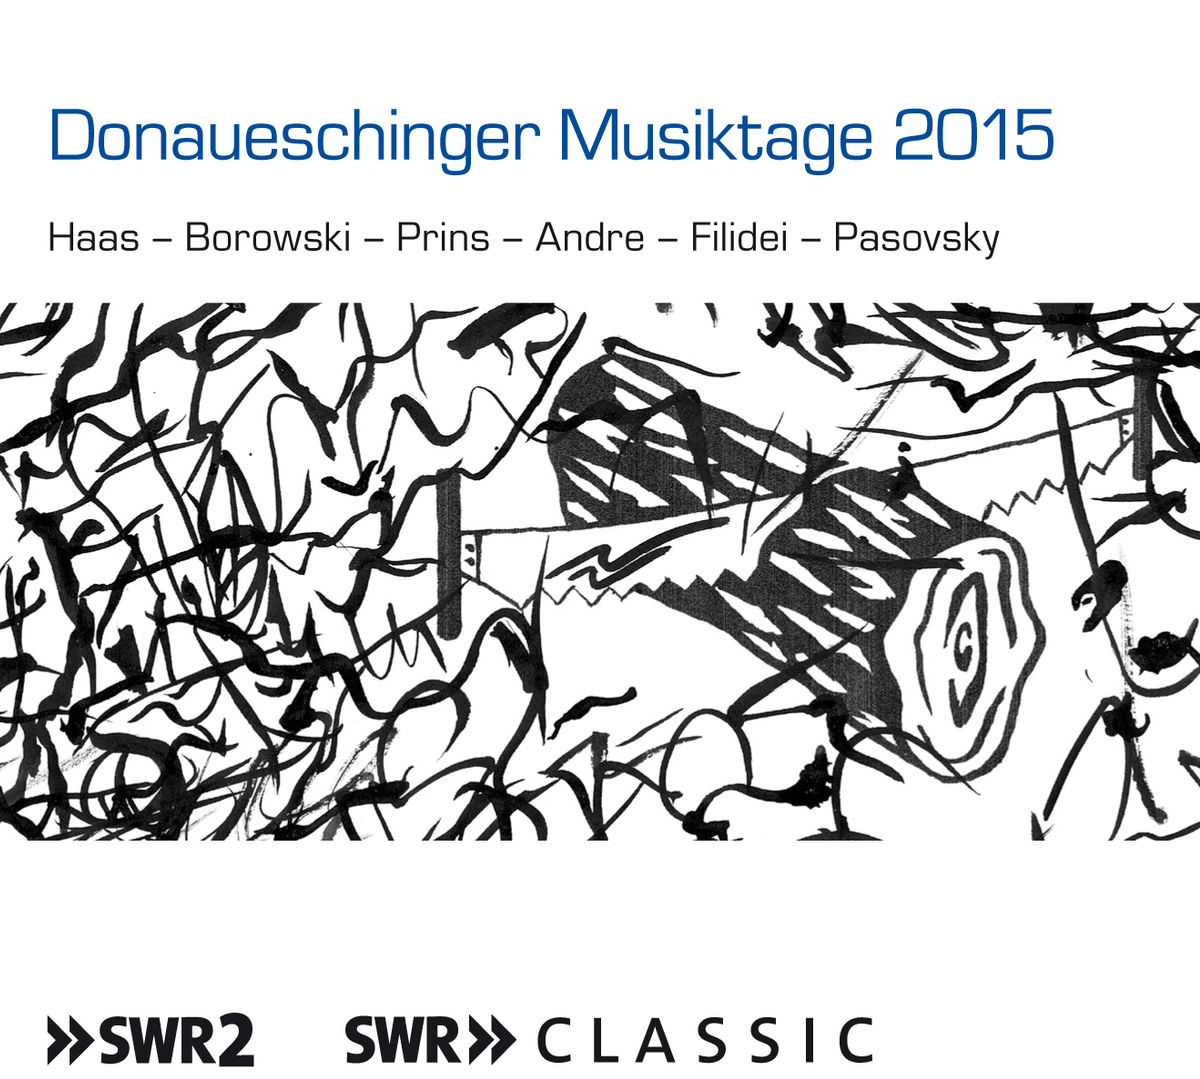 Donaueschinger Musiktage 2015&nbsp;